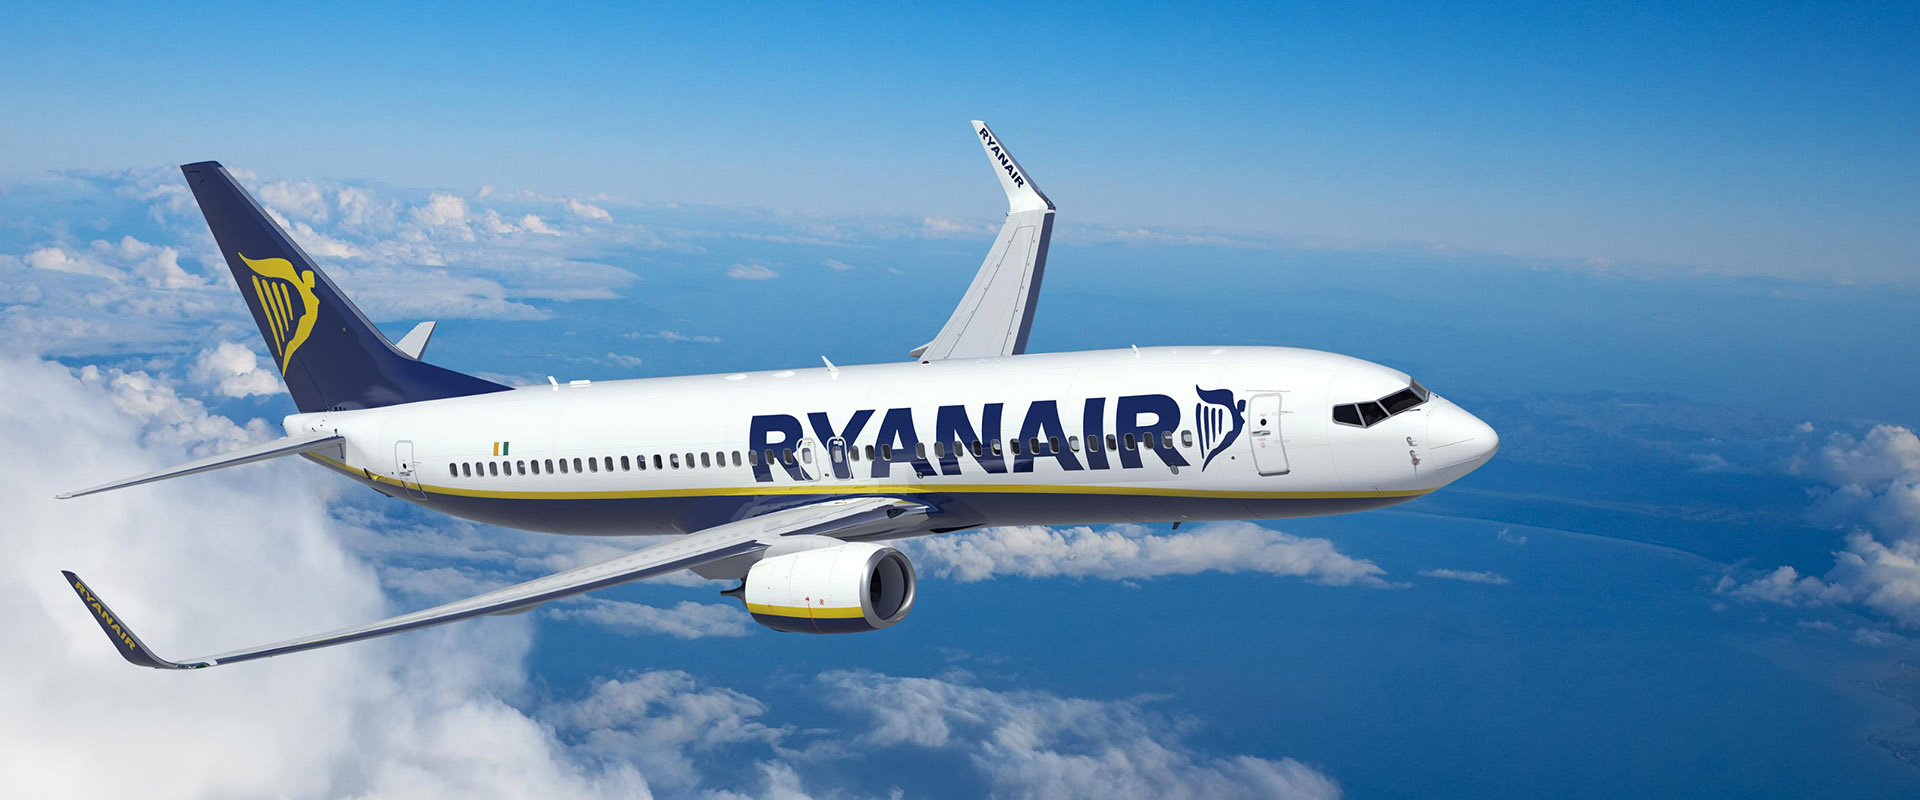 Ryanair Gibt Den Winterflugplan 2019 Für Berlin Bekannt 12 Neue Winterrouten, 59 Routen Insgesamt, 5,9 Millionen Kunden